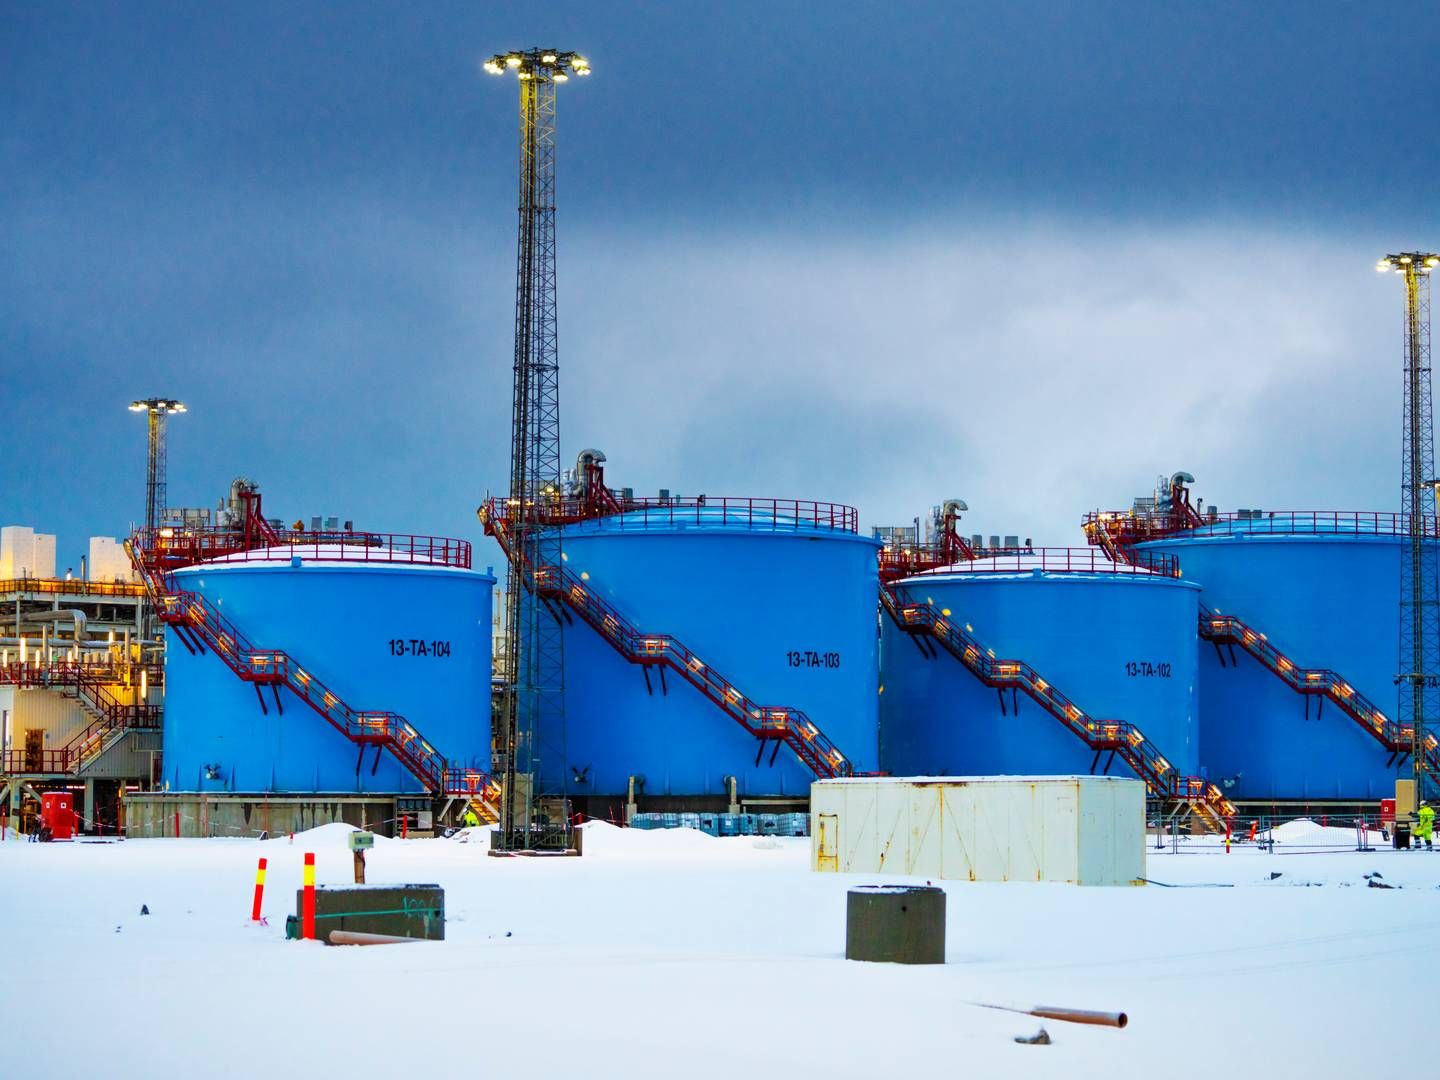 LNG INFRASTRUKTUR: Wintershall DEA er involvert i Snøhvit som er tilknyttet LNG-anlegget på Melkøya, men selskapet sier nei til å investere i LNG infrastruktur. | Foto: NTB/ Ole Berg-Rusten